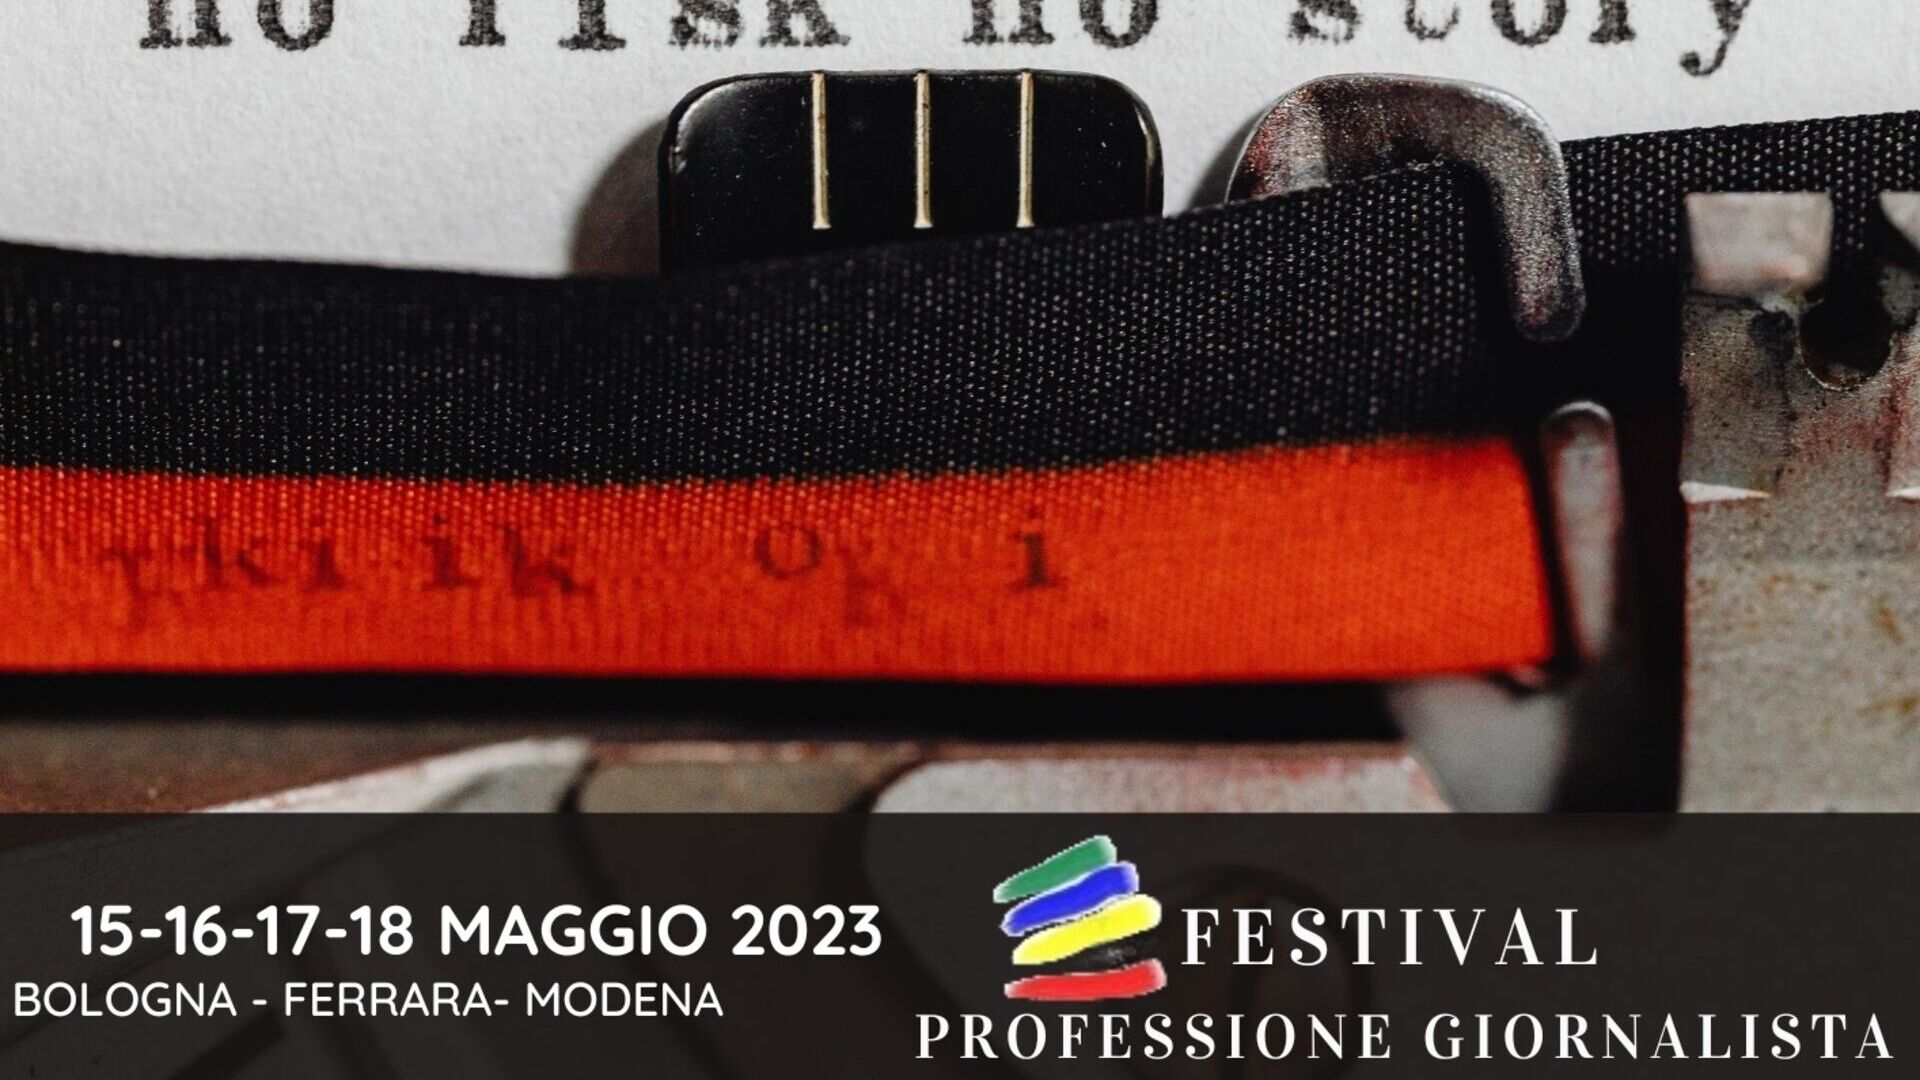 Nghề nhà báo: key visual của lễ hội "Professione Giornalista" phiên bản 2023 (Bologna, Ferrara, Modena, 15-16-17-18/XNUMX)